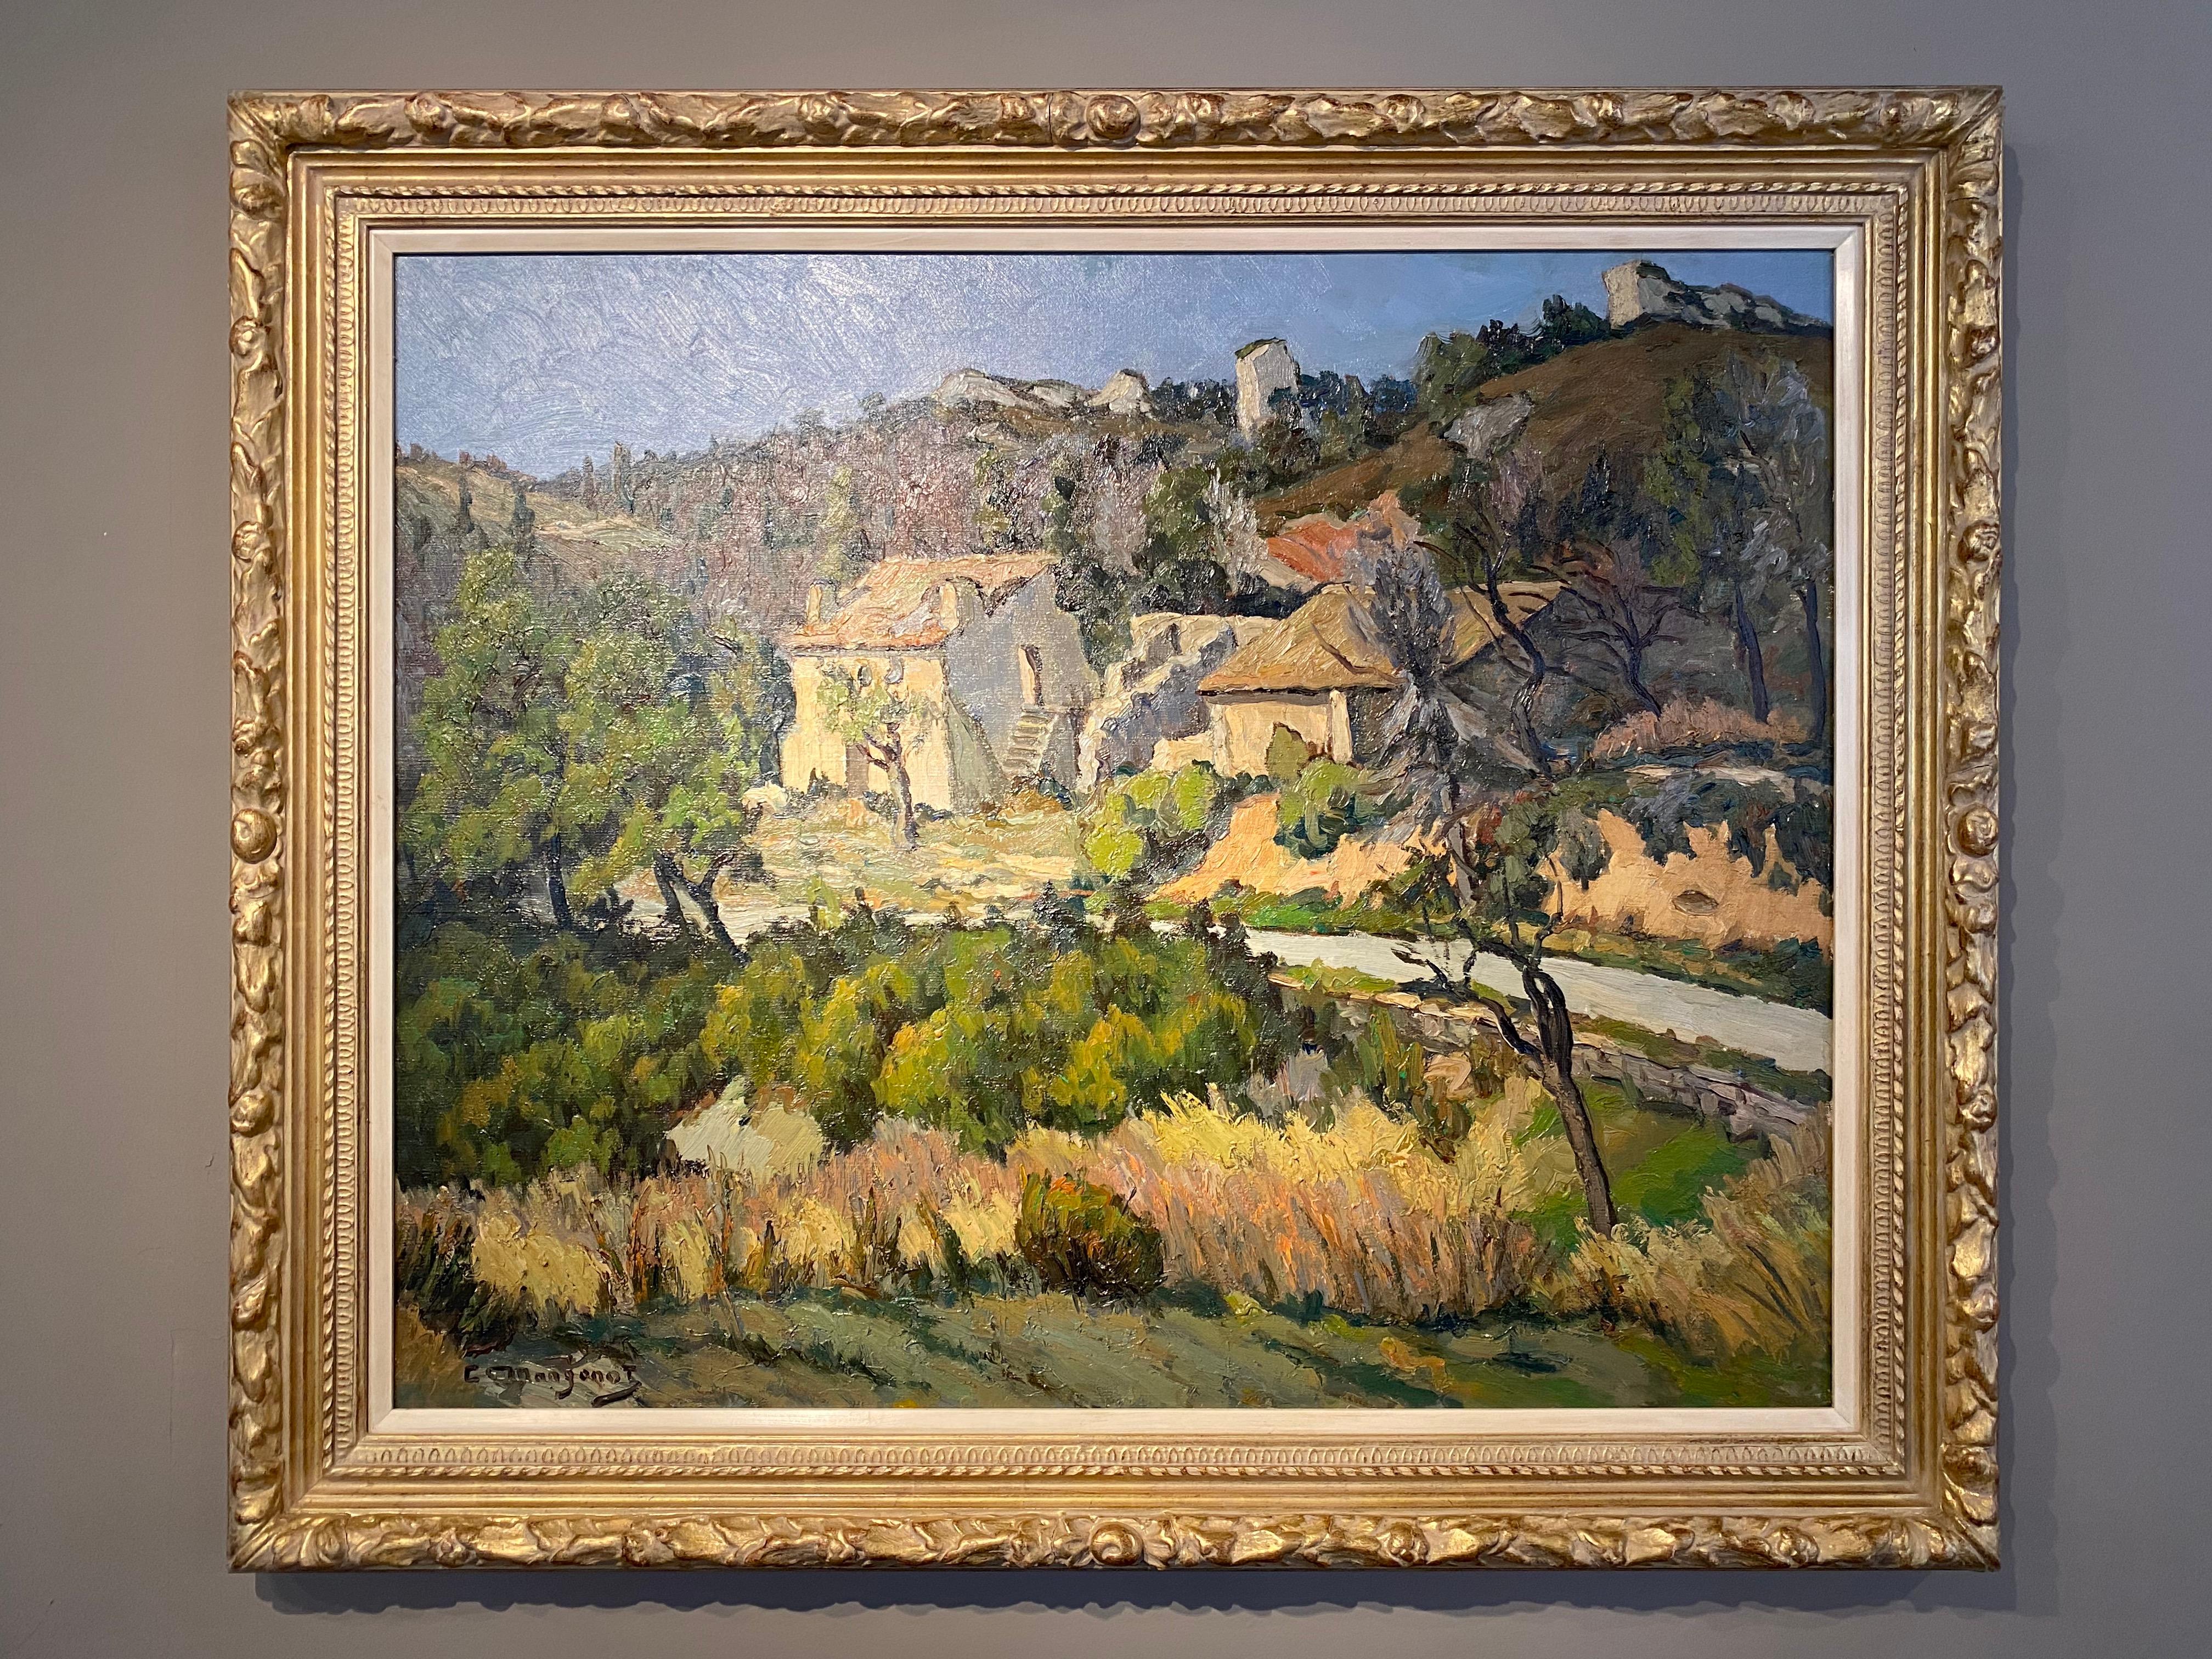 Landscape Painting Emile Mangenot - Peinture rurale française Live Groves d'un paysage d'arbres, de chalet et de verdure 